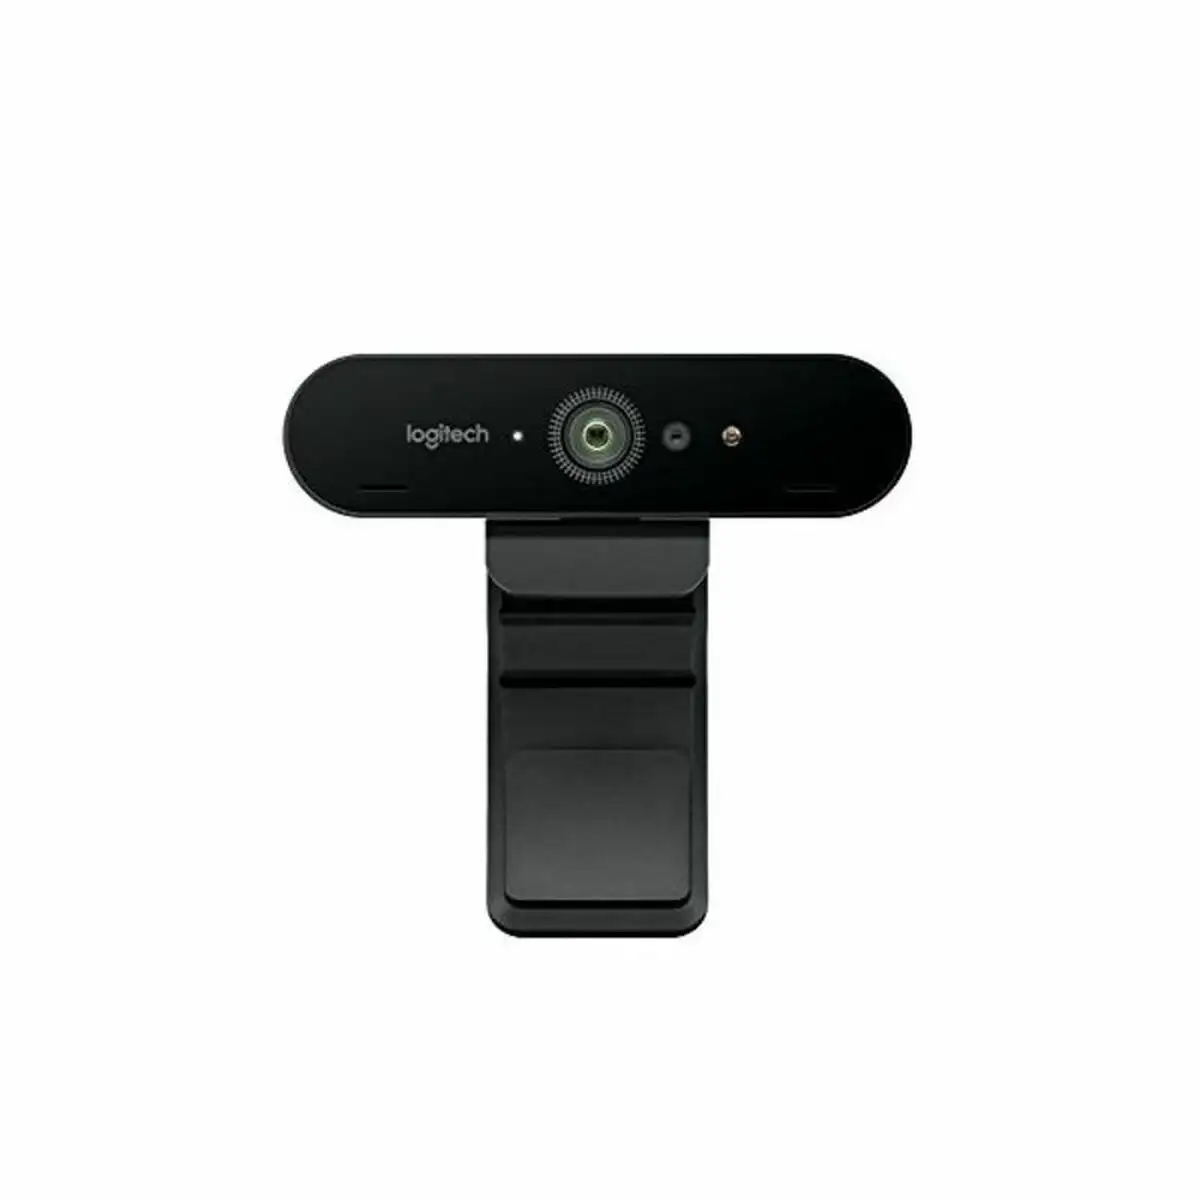 Webcam logitech brio 4k ultra hd rightlight 3 hdr zoom 5x streaming infrarouges noir_7390. DIAYTAR SENEGAL - Où Choisir Devient une Découverte. Explorez notre boutique en ligne et trouvez des articles qui vous surprennent et vous ravissent à chaque clic.